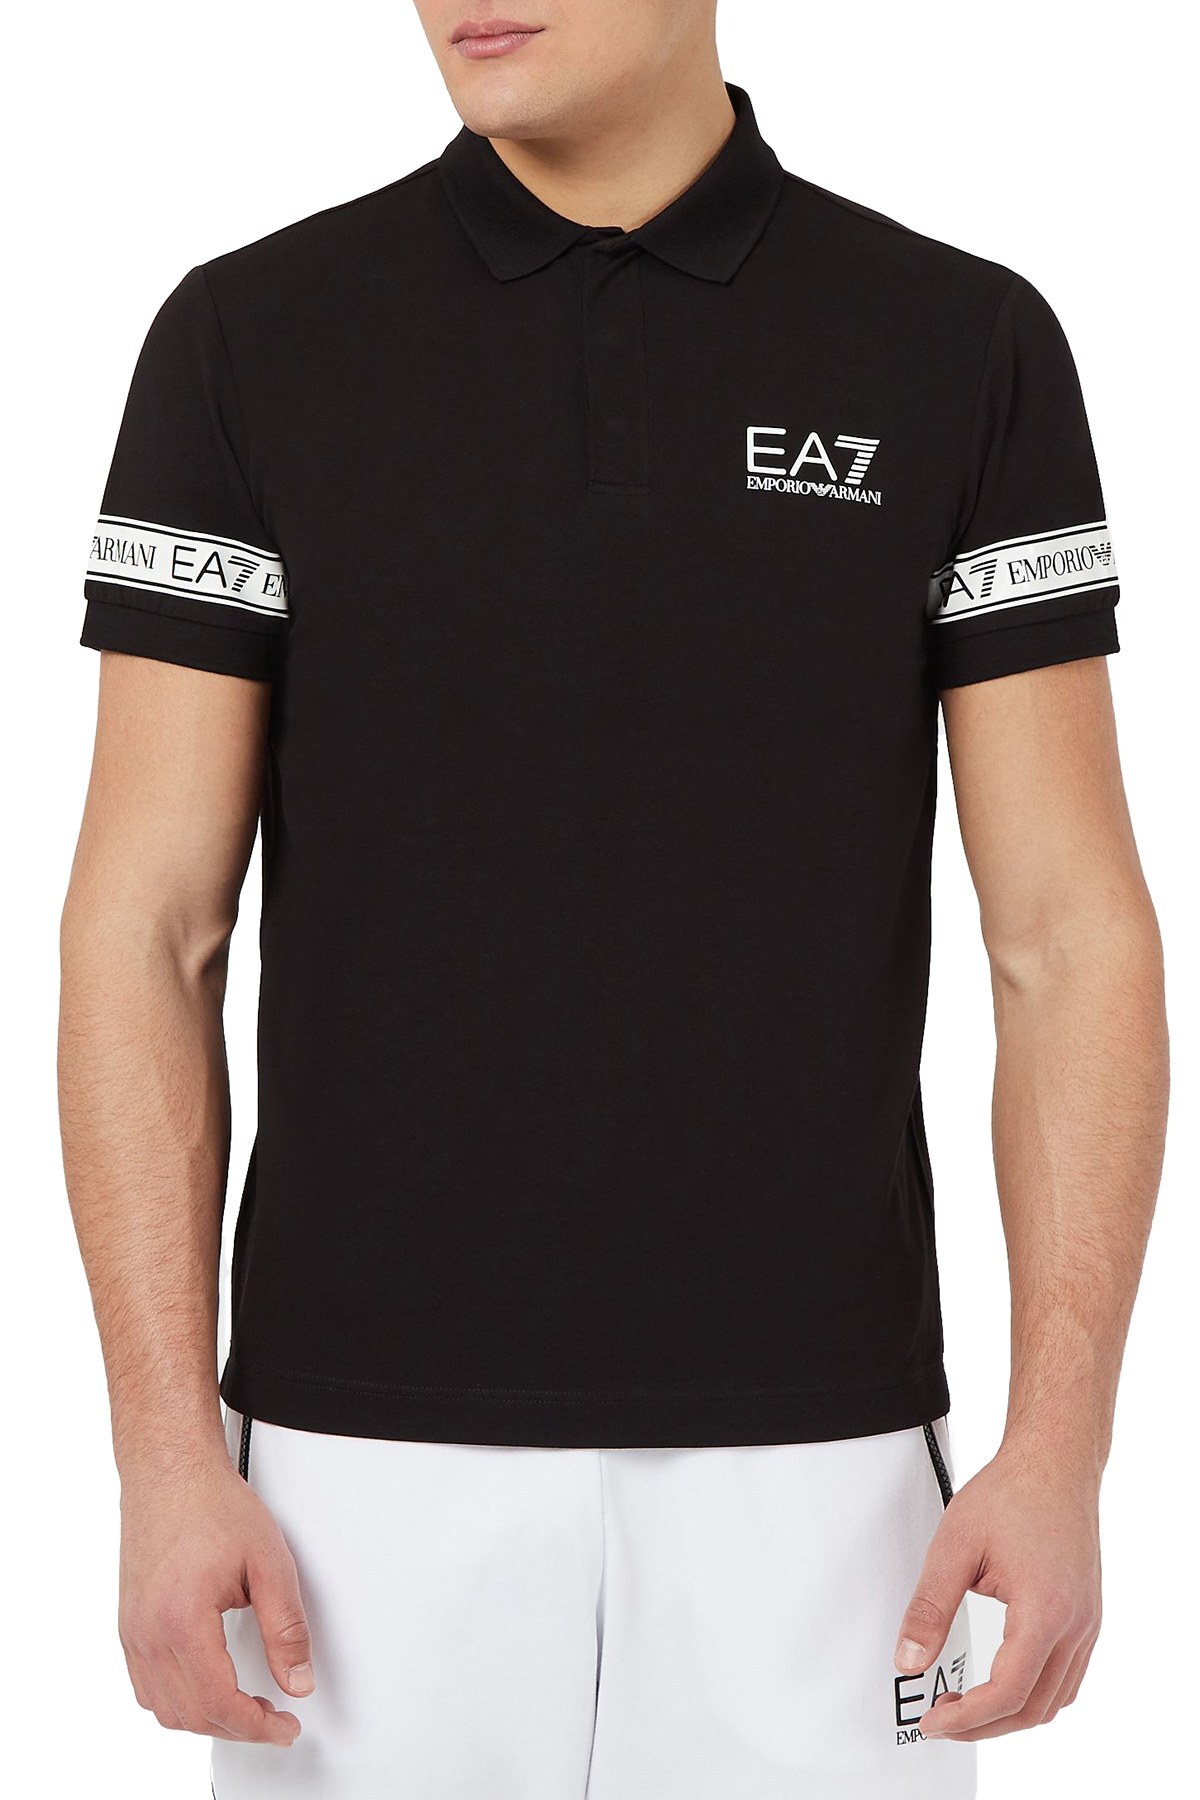 EA7 Logo Baskılı Pamuklu T Shirt Erkek Polo 3KPF04 PJ03Z 1200 SİYAH